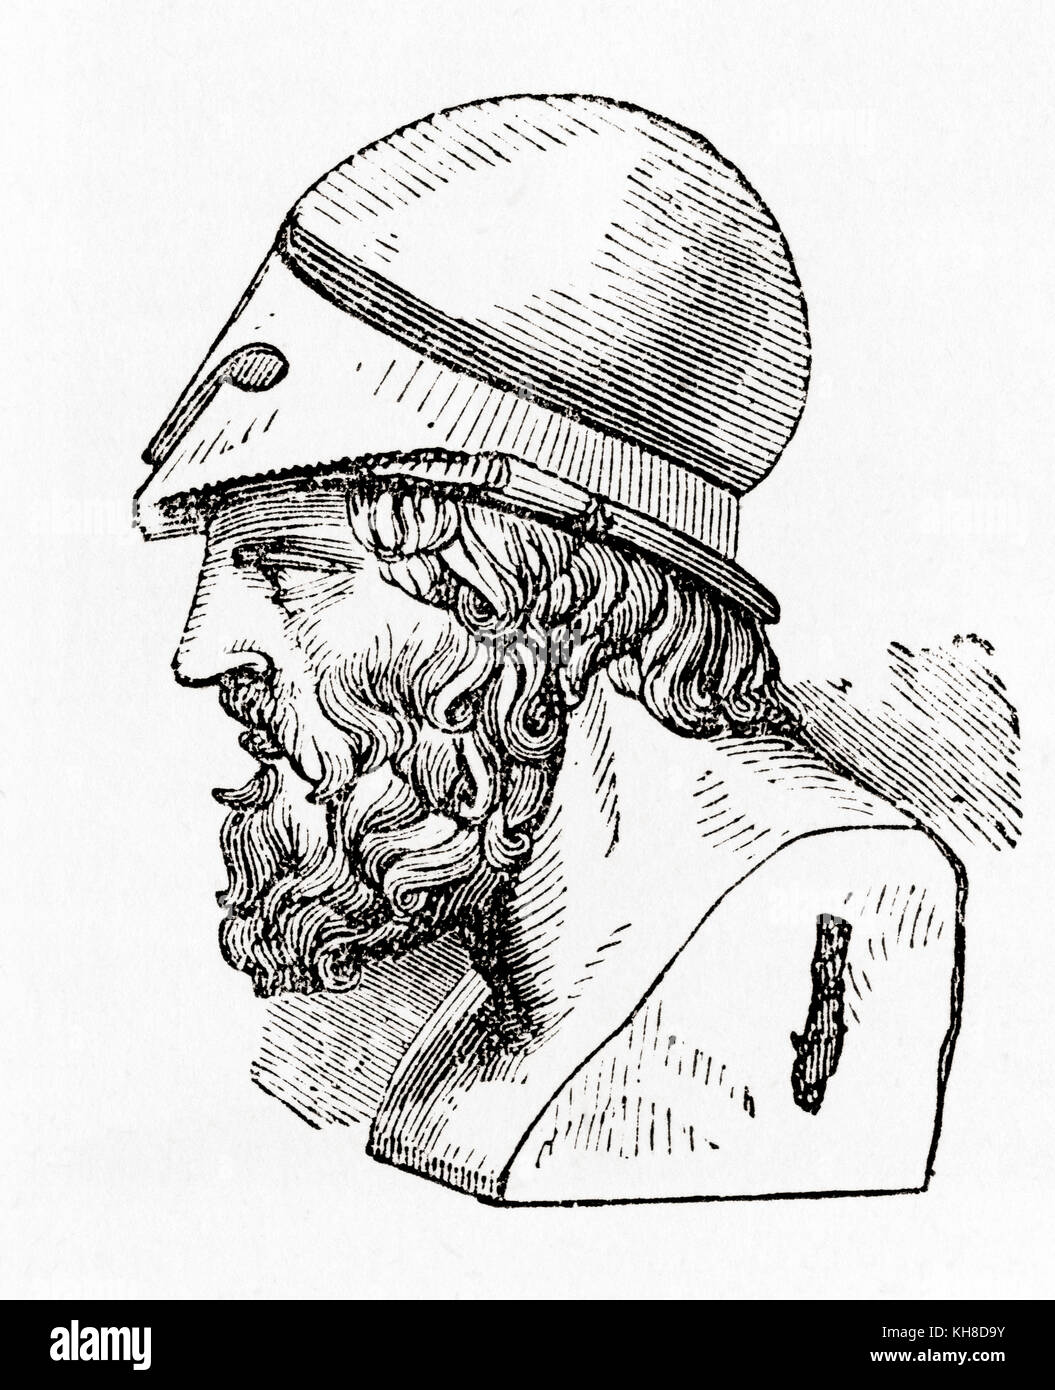 Aristide, 530 a.C. – 468 a.C. Antico statista ateniese. Da The Illustrated History of the World di Ward and Lock, pubblicato intorno al 1882. Foto Stock